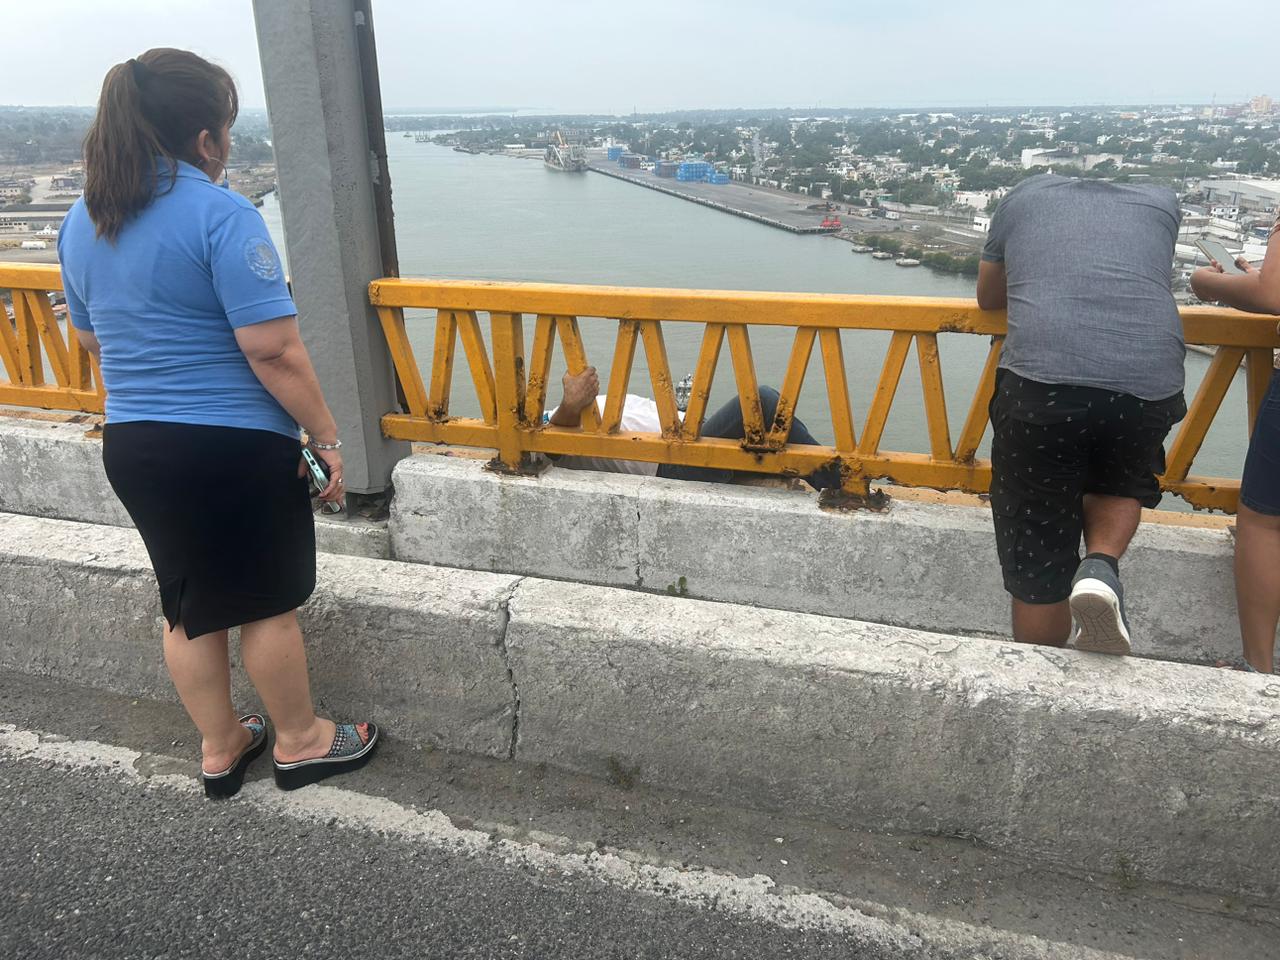 Un hombre que padece crisis nerviosas quería quitarse la vida arrojándose del puente Tampico.